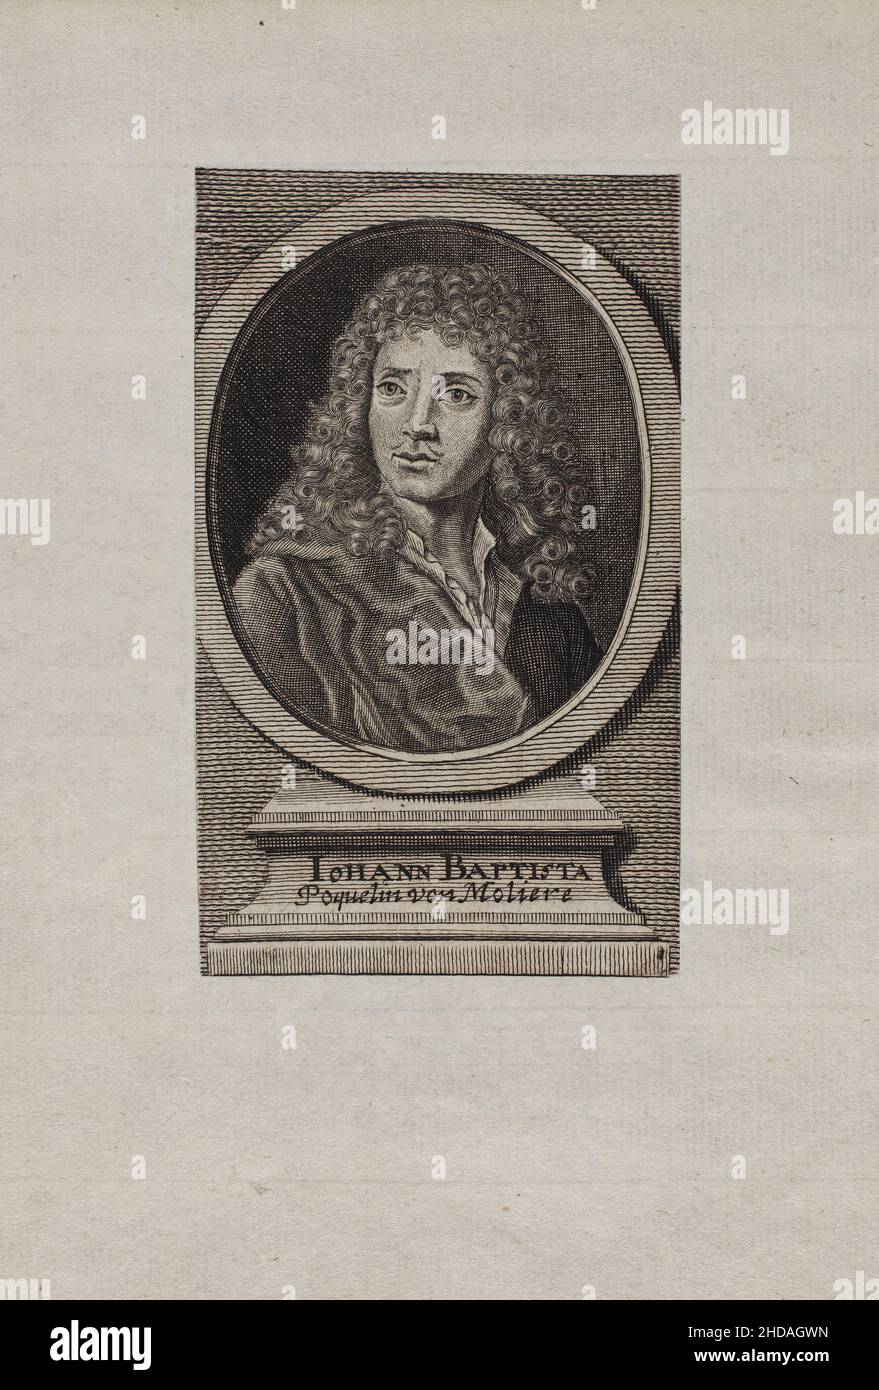 Stich von Iohann Baptista Postquelin von Moliere. 1660 Jean-Baptiste Poquelin (1622 – 1673), bekannt unter seinem Künstlernamen Molière, war ein französischer Dramatiker Stockfoto